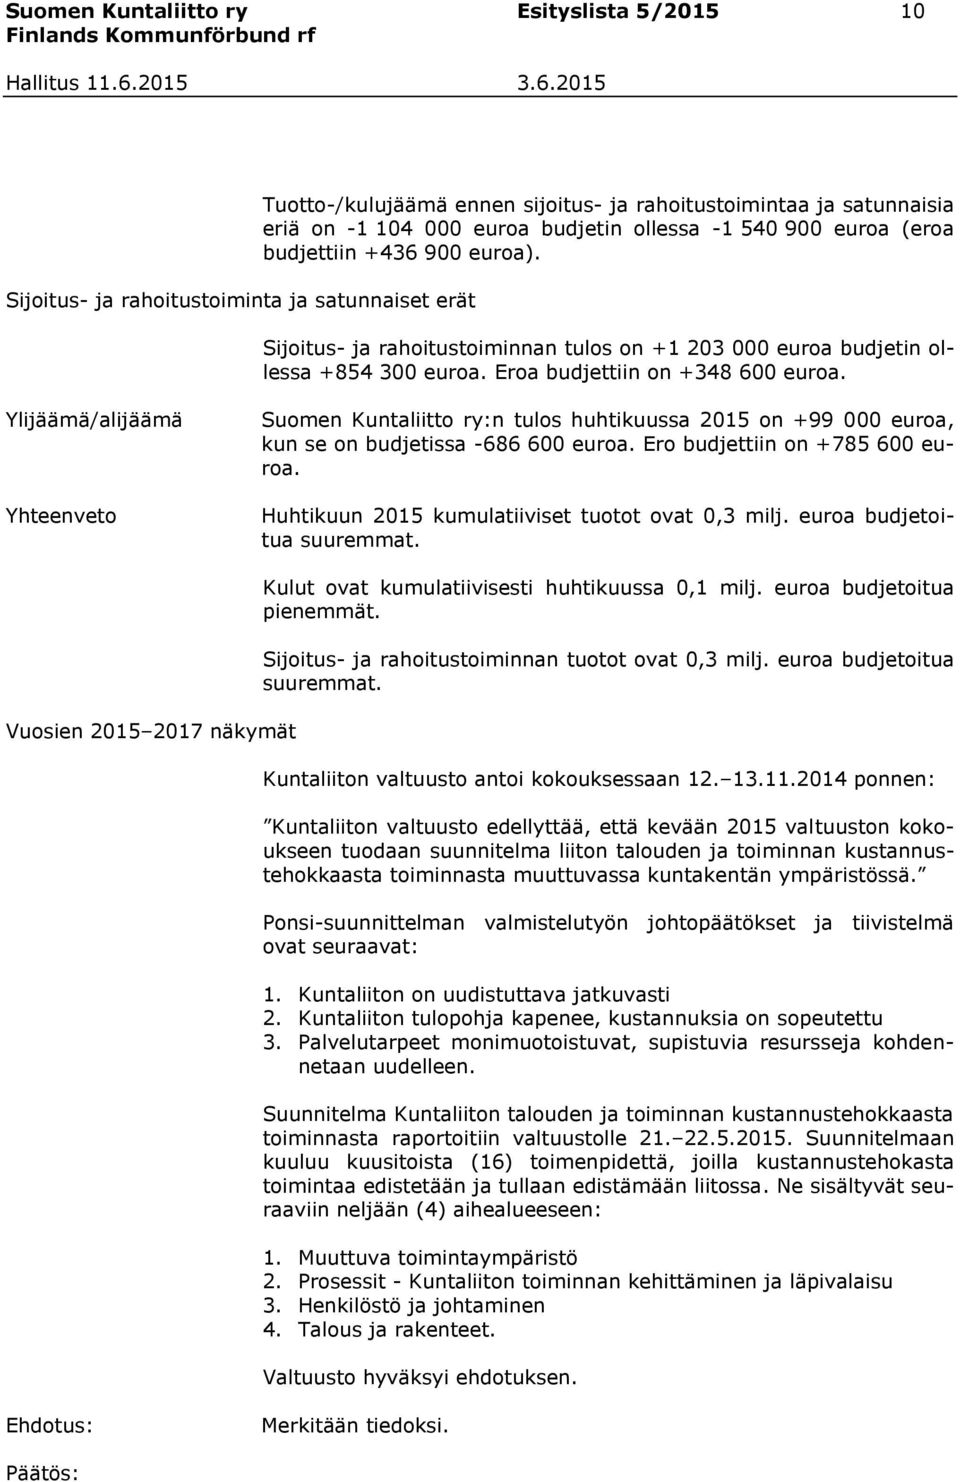 Ylijäämä/alijäämä Yhteenveto Suomen Kuntaliitto ry:n tulos huhtikuussa 2015 on +99 000 euroa, kun se on budjetissa -686 600 euroa. Ero budjettiin on +785 600 euroa.